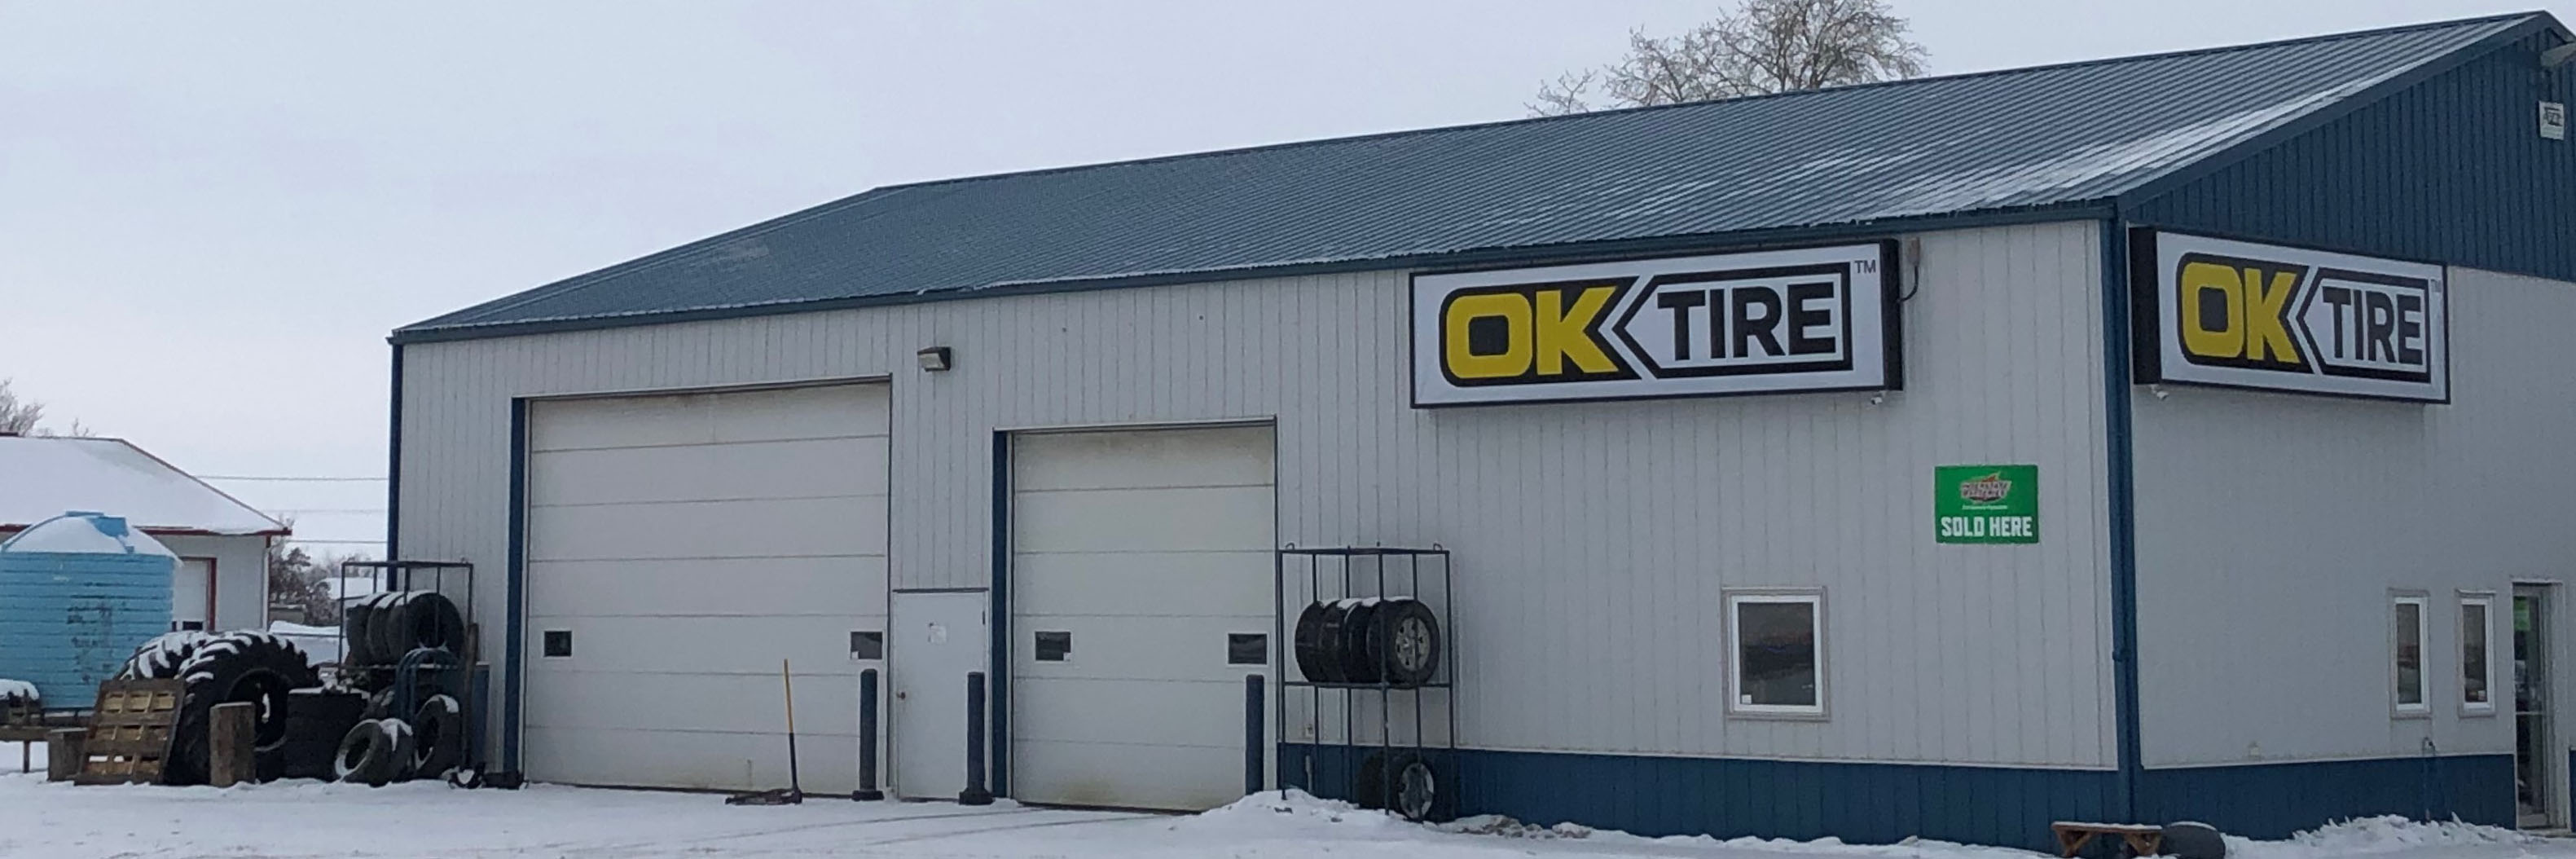 OK Tire Foam Lake - Tire and Auto Services